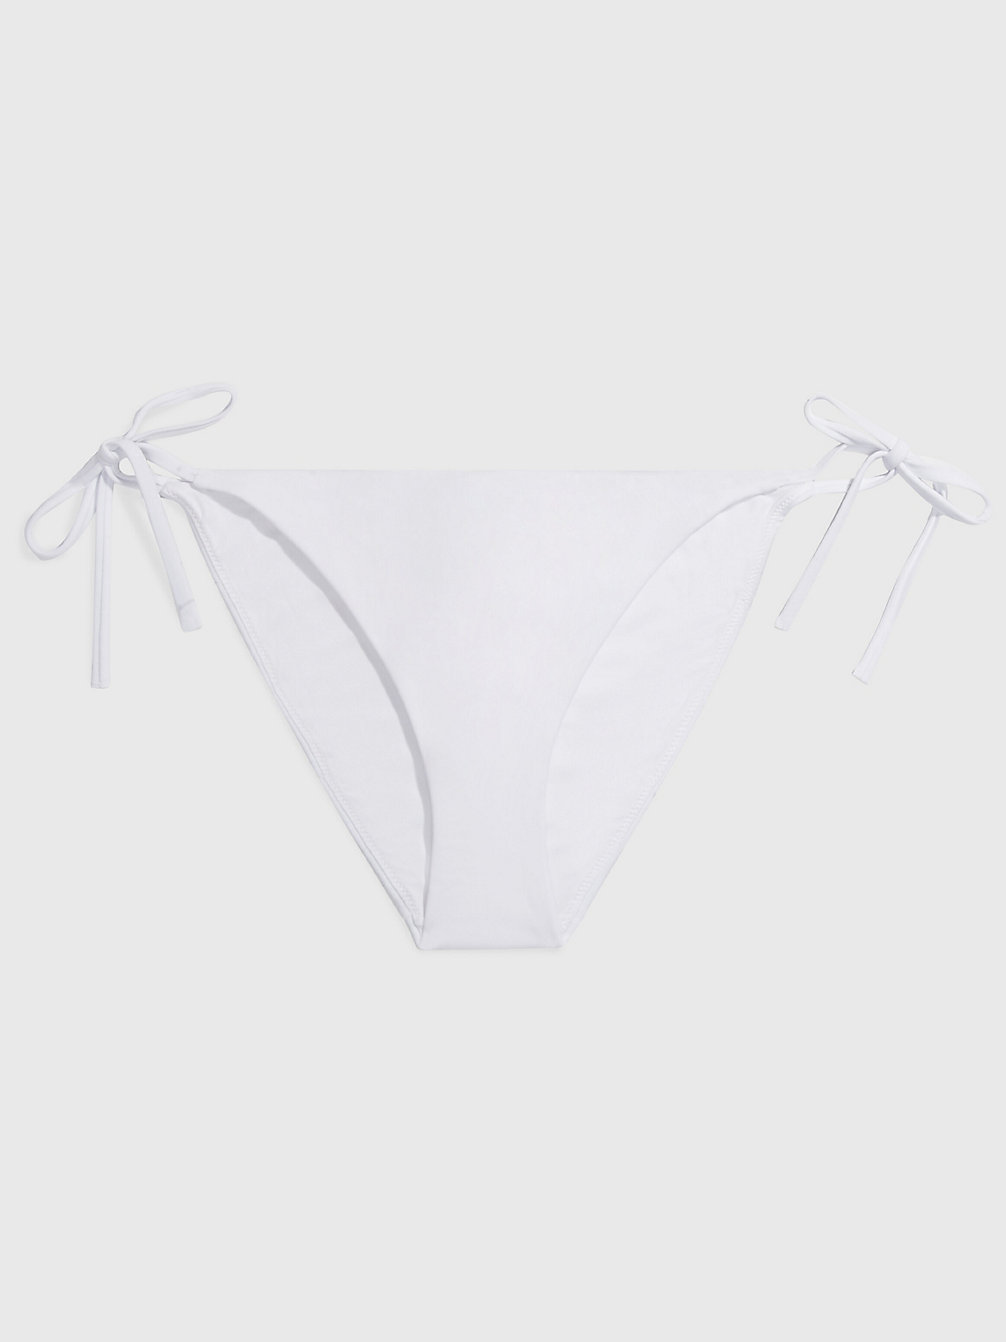 PVH CLASSIC WHITE Tie Side Bikini Bottoms - Core Archive undefined women Calvin Klein